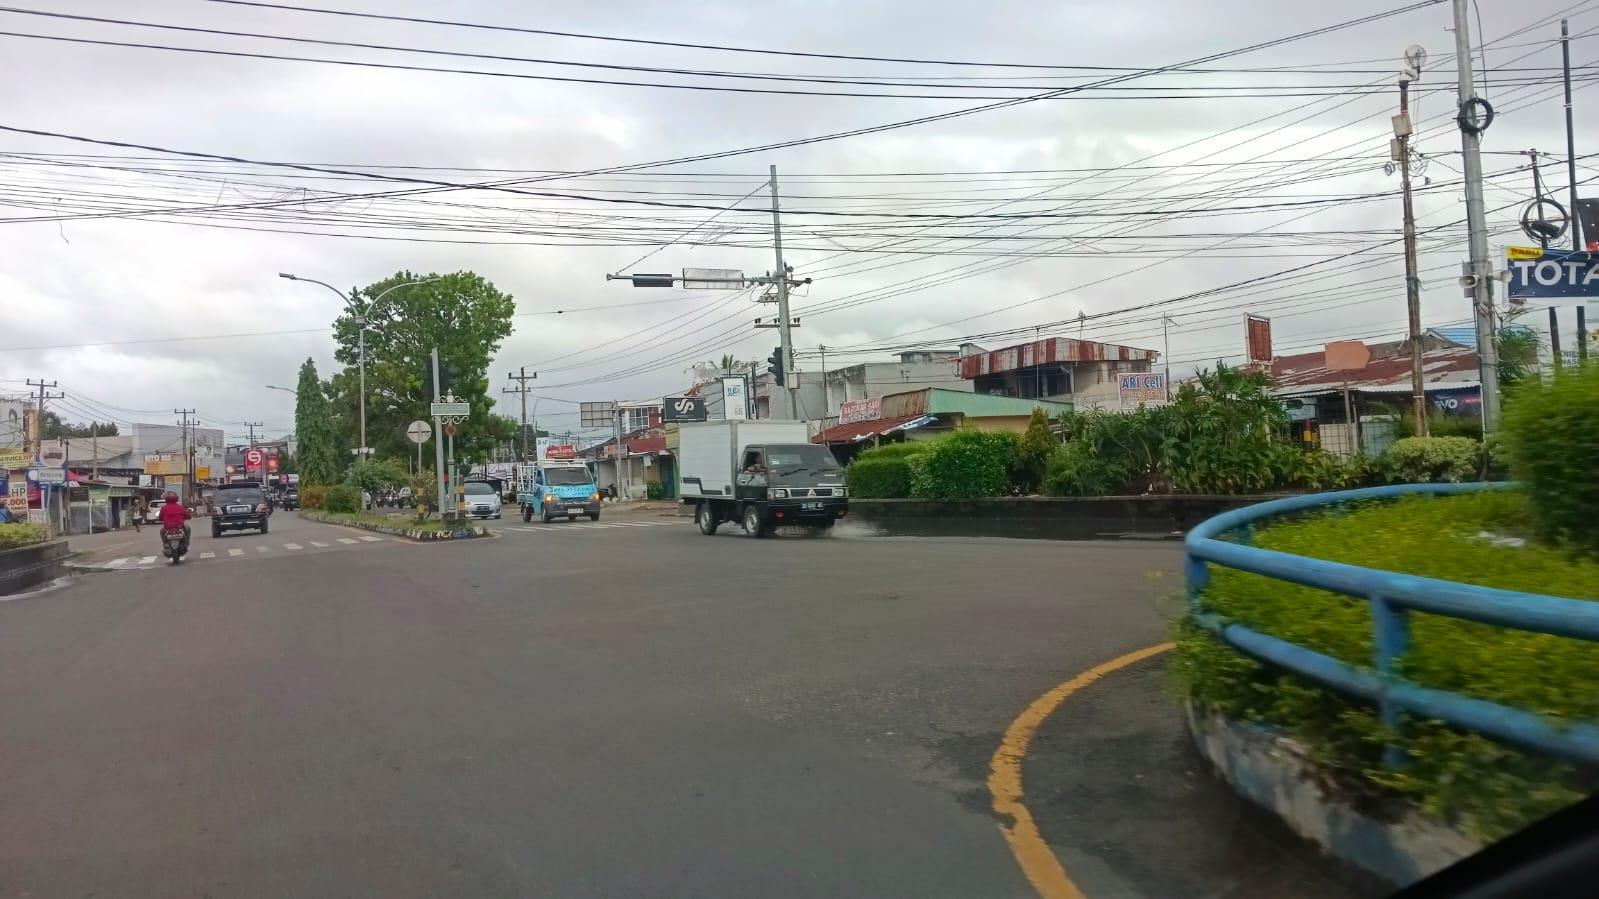 Traffic Light di Simpang Pagar Dewa Mati, Warga: Belum Ada Perbaikan